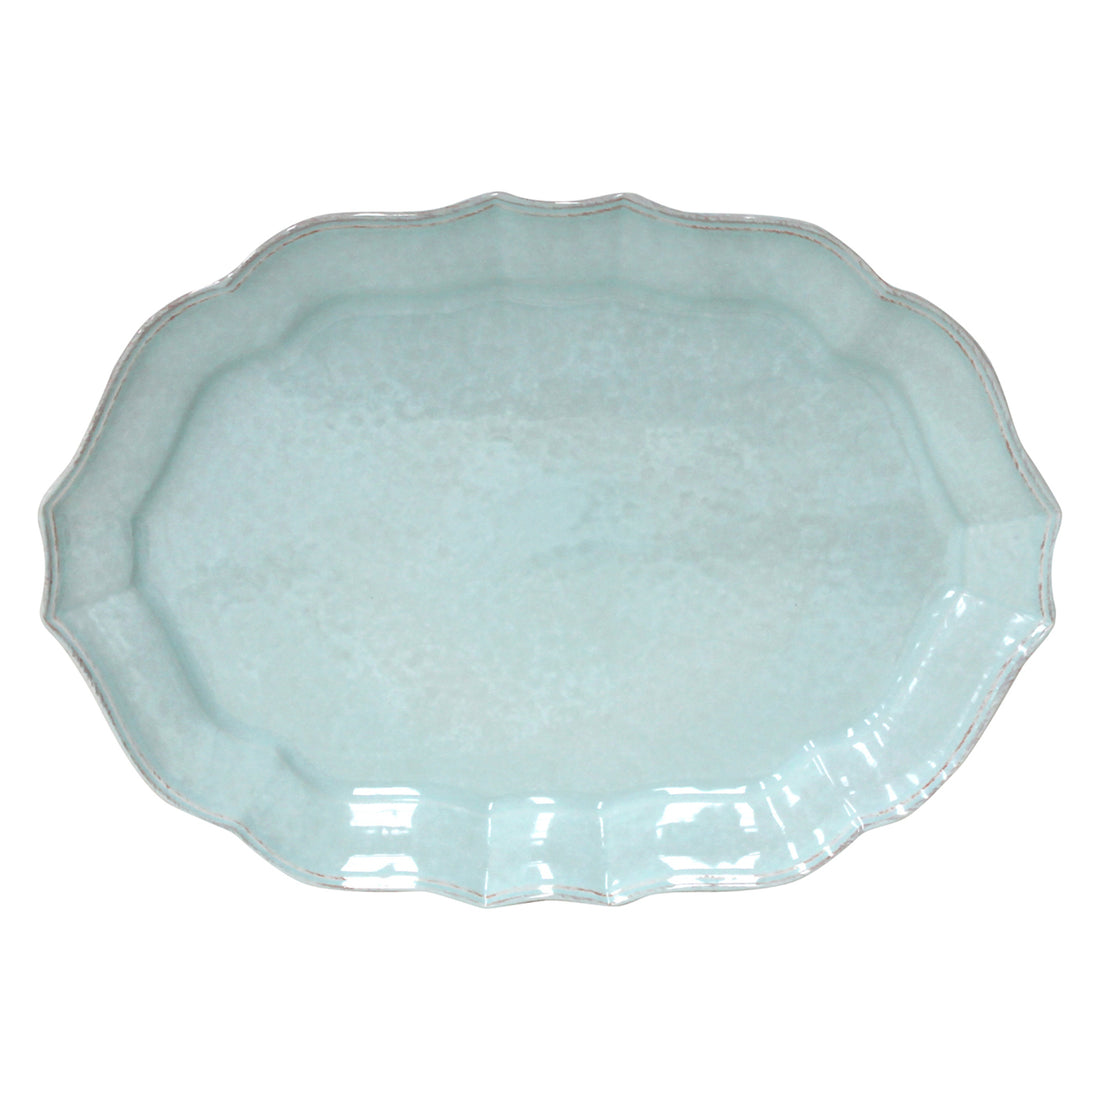 Blue Impressions Oval Platter Casafina